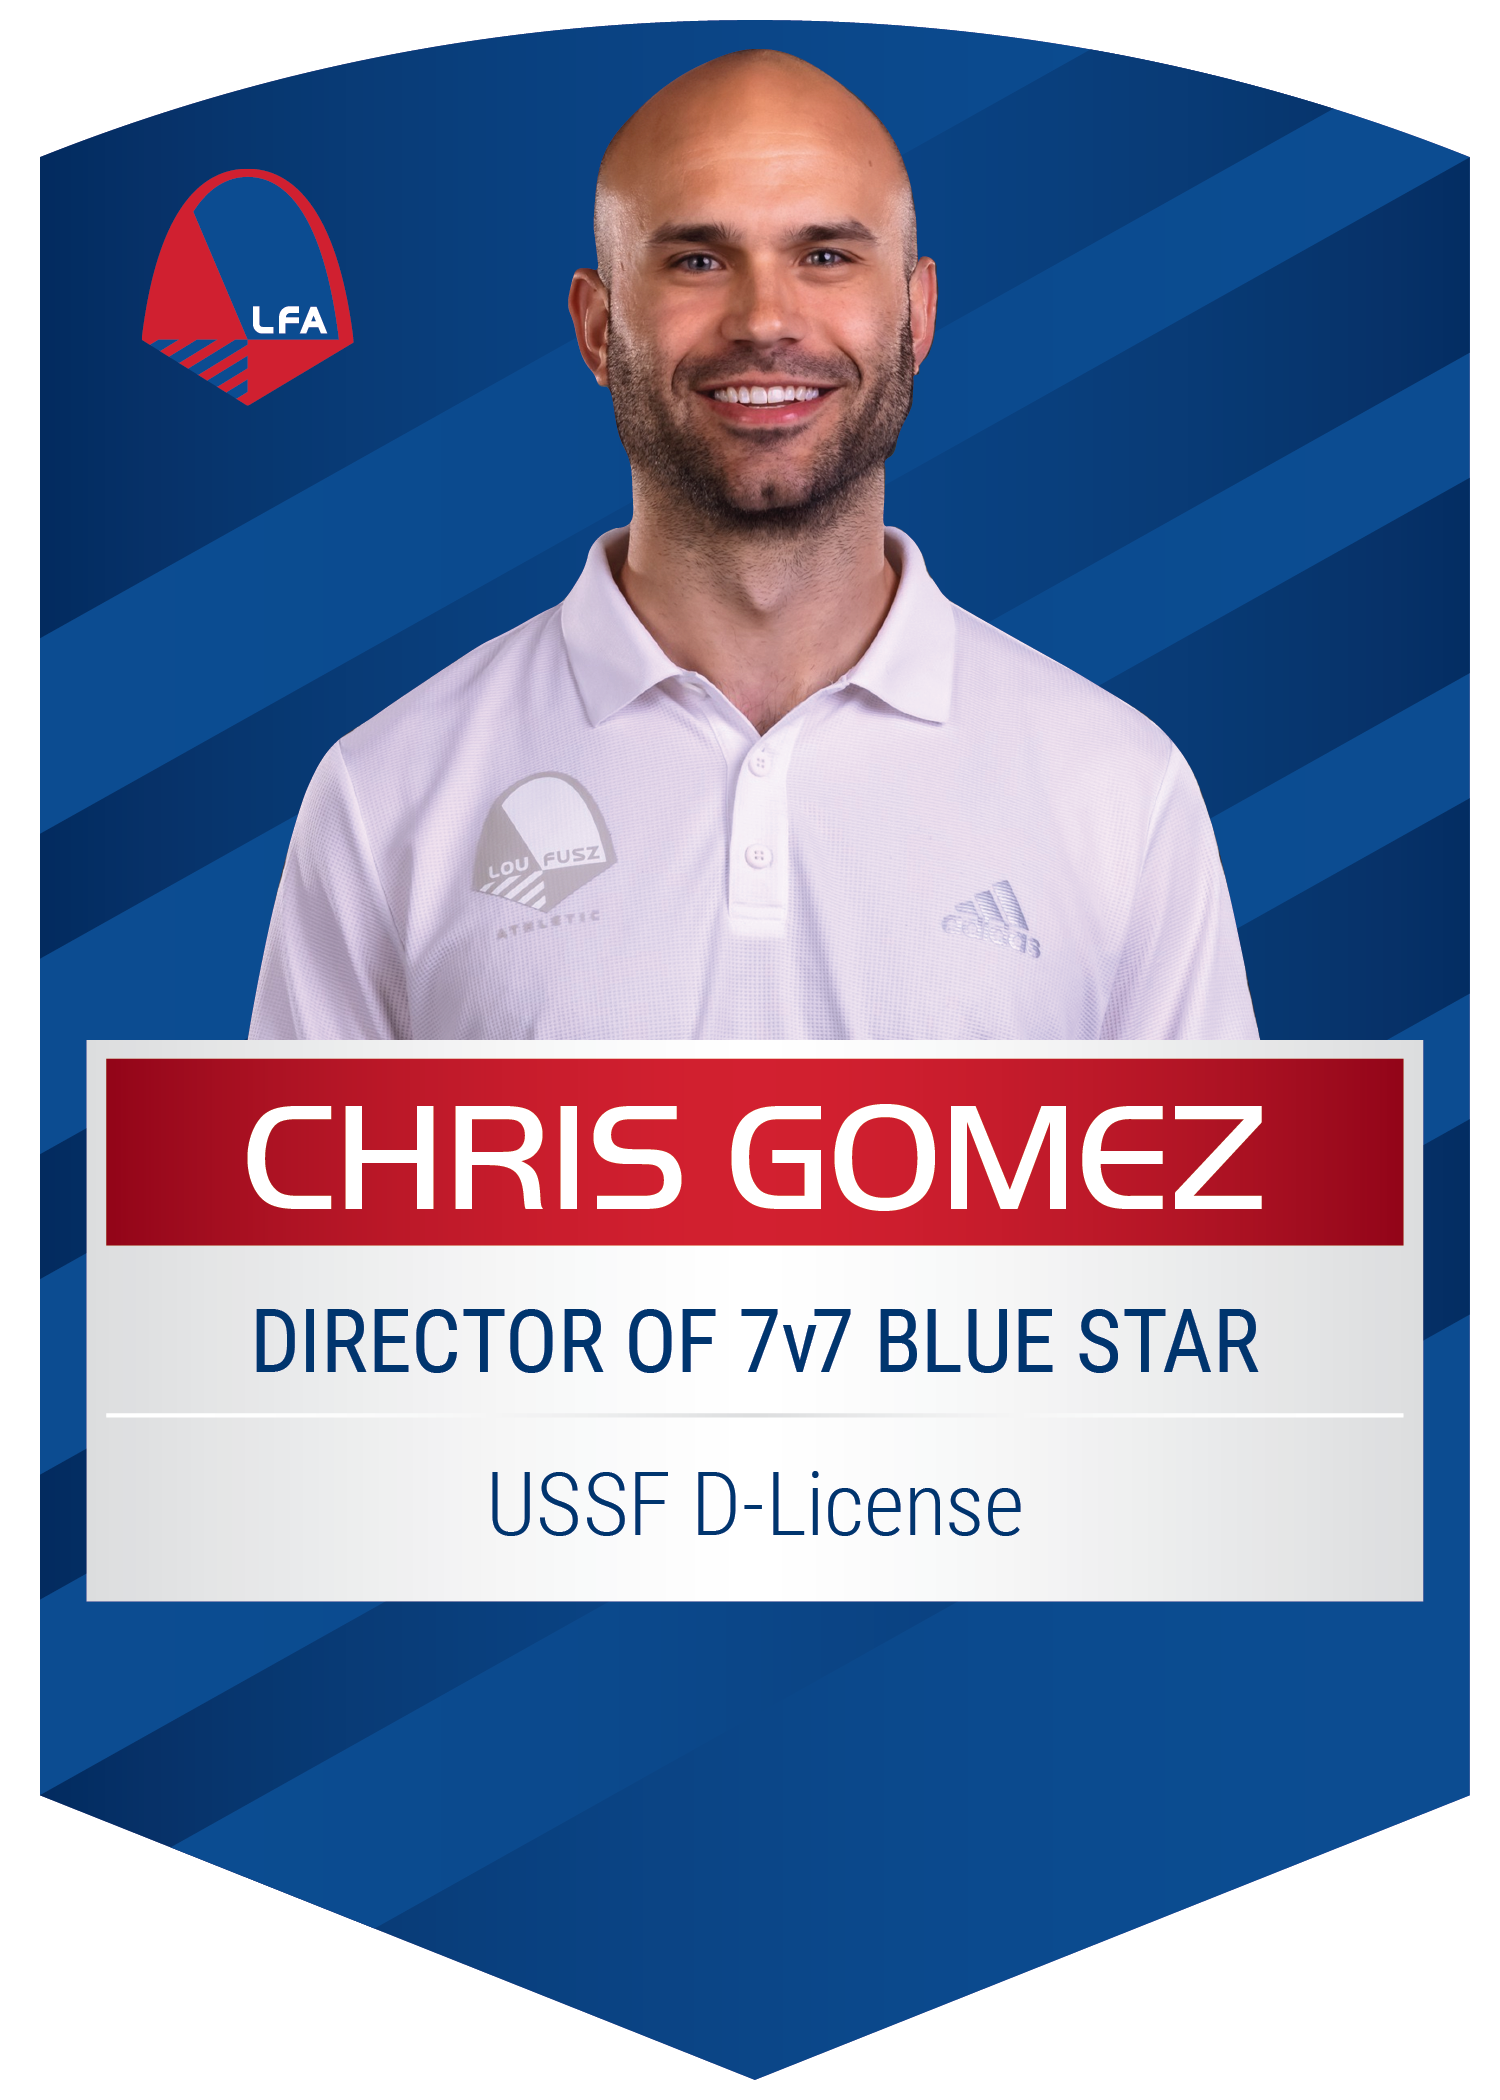 Chris Gomez